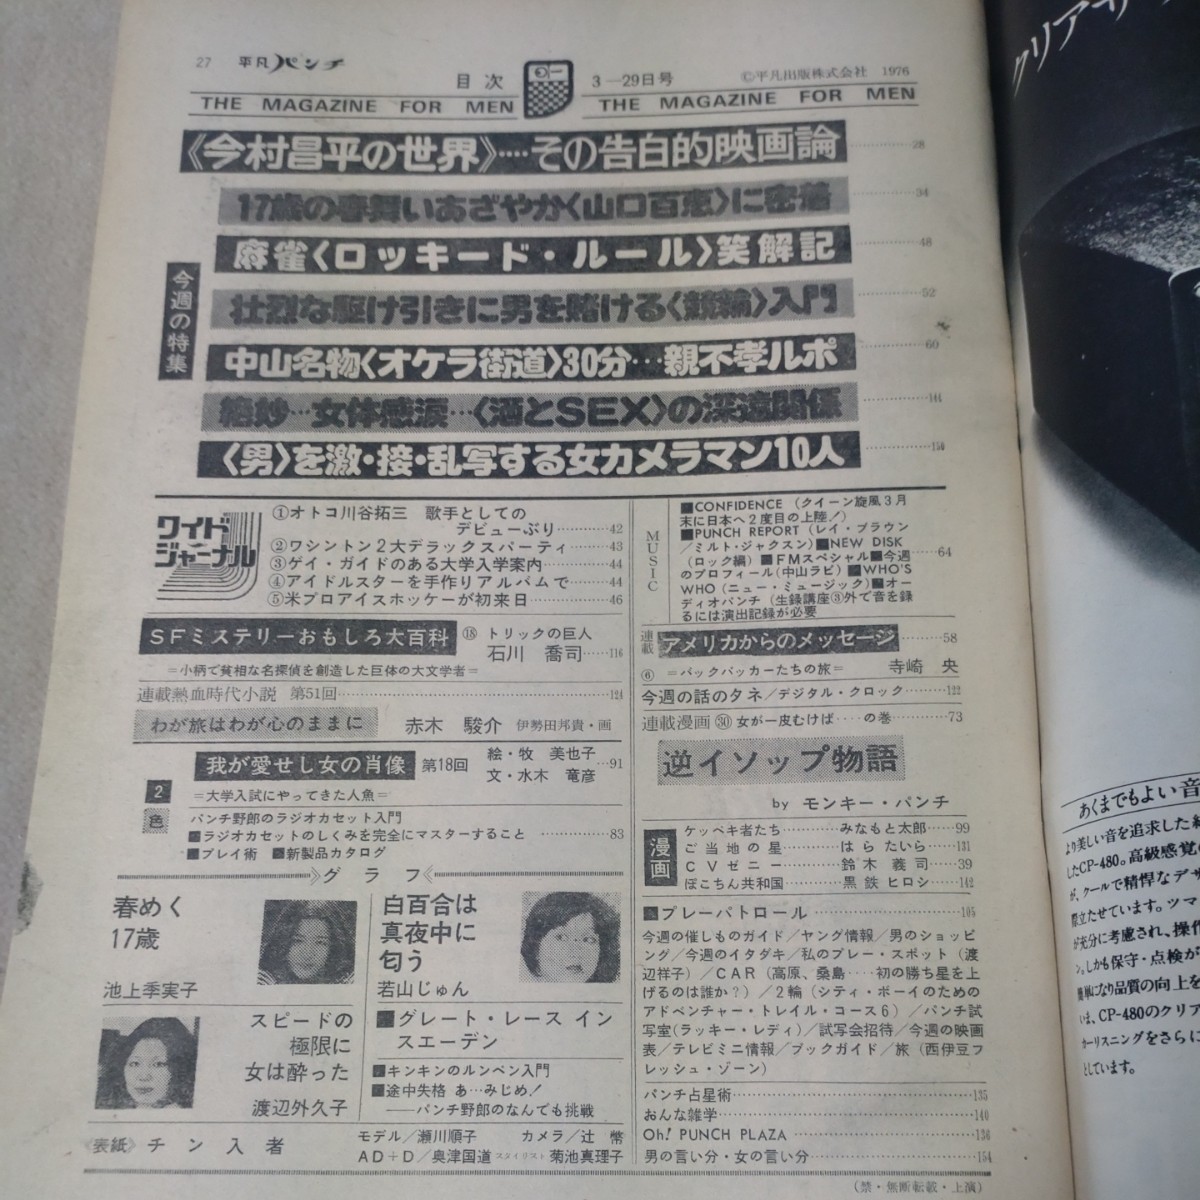  обычный дырокол 1976 год 3*29 Ikegami сезон реальный .